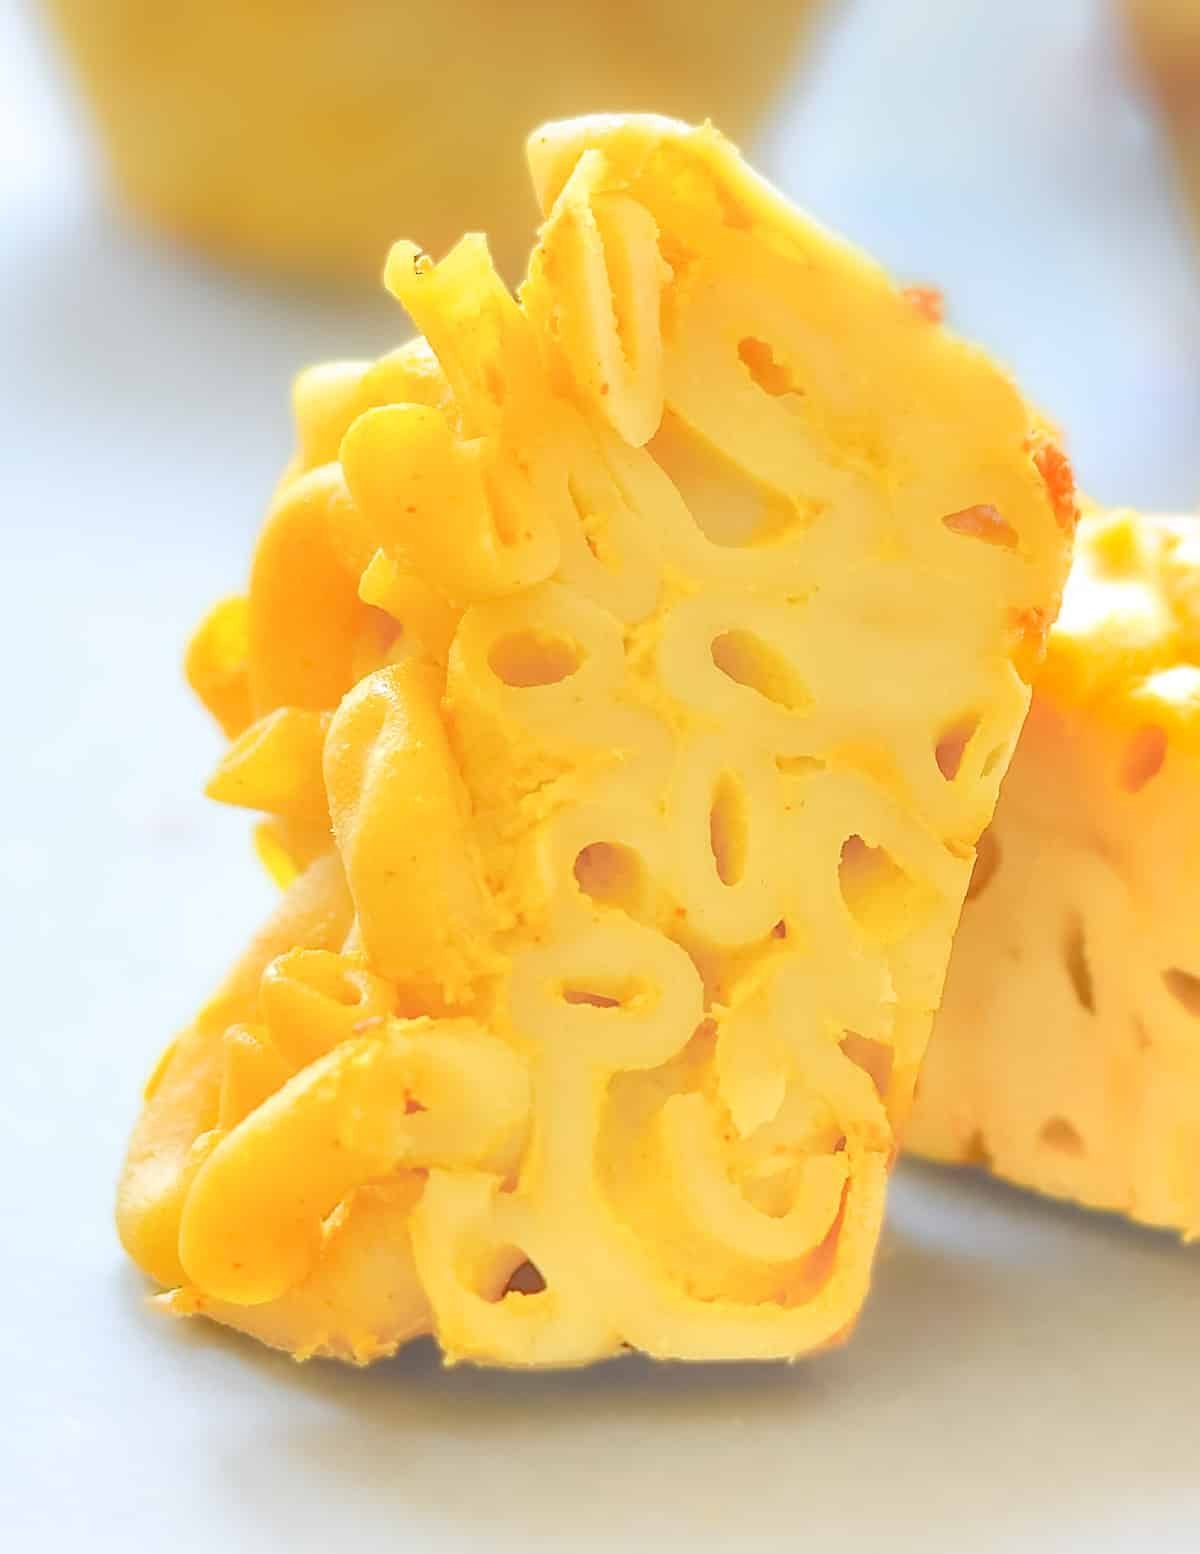 the inside of a cut vegan mac & cheese bite